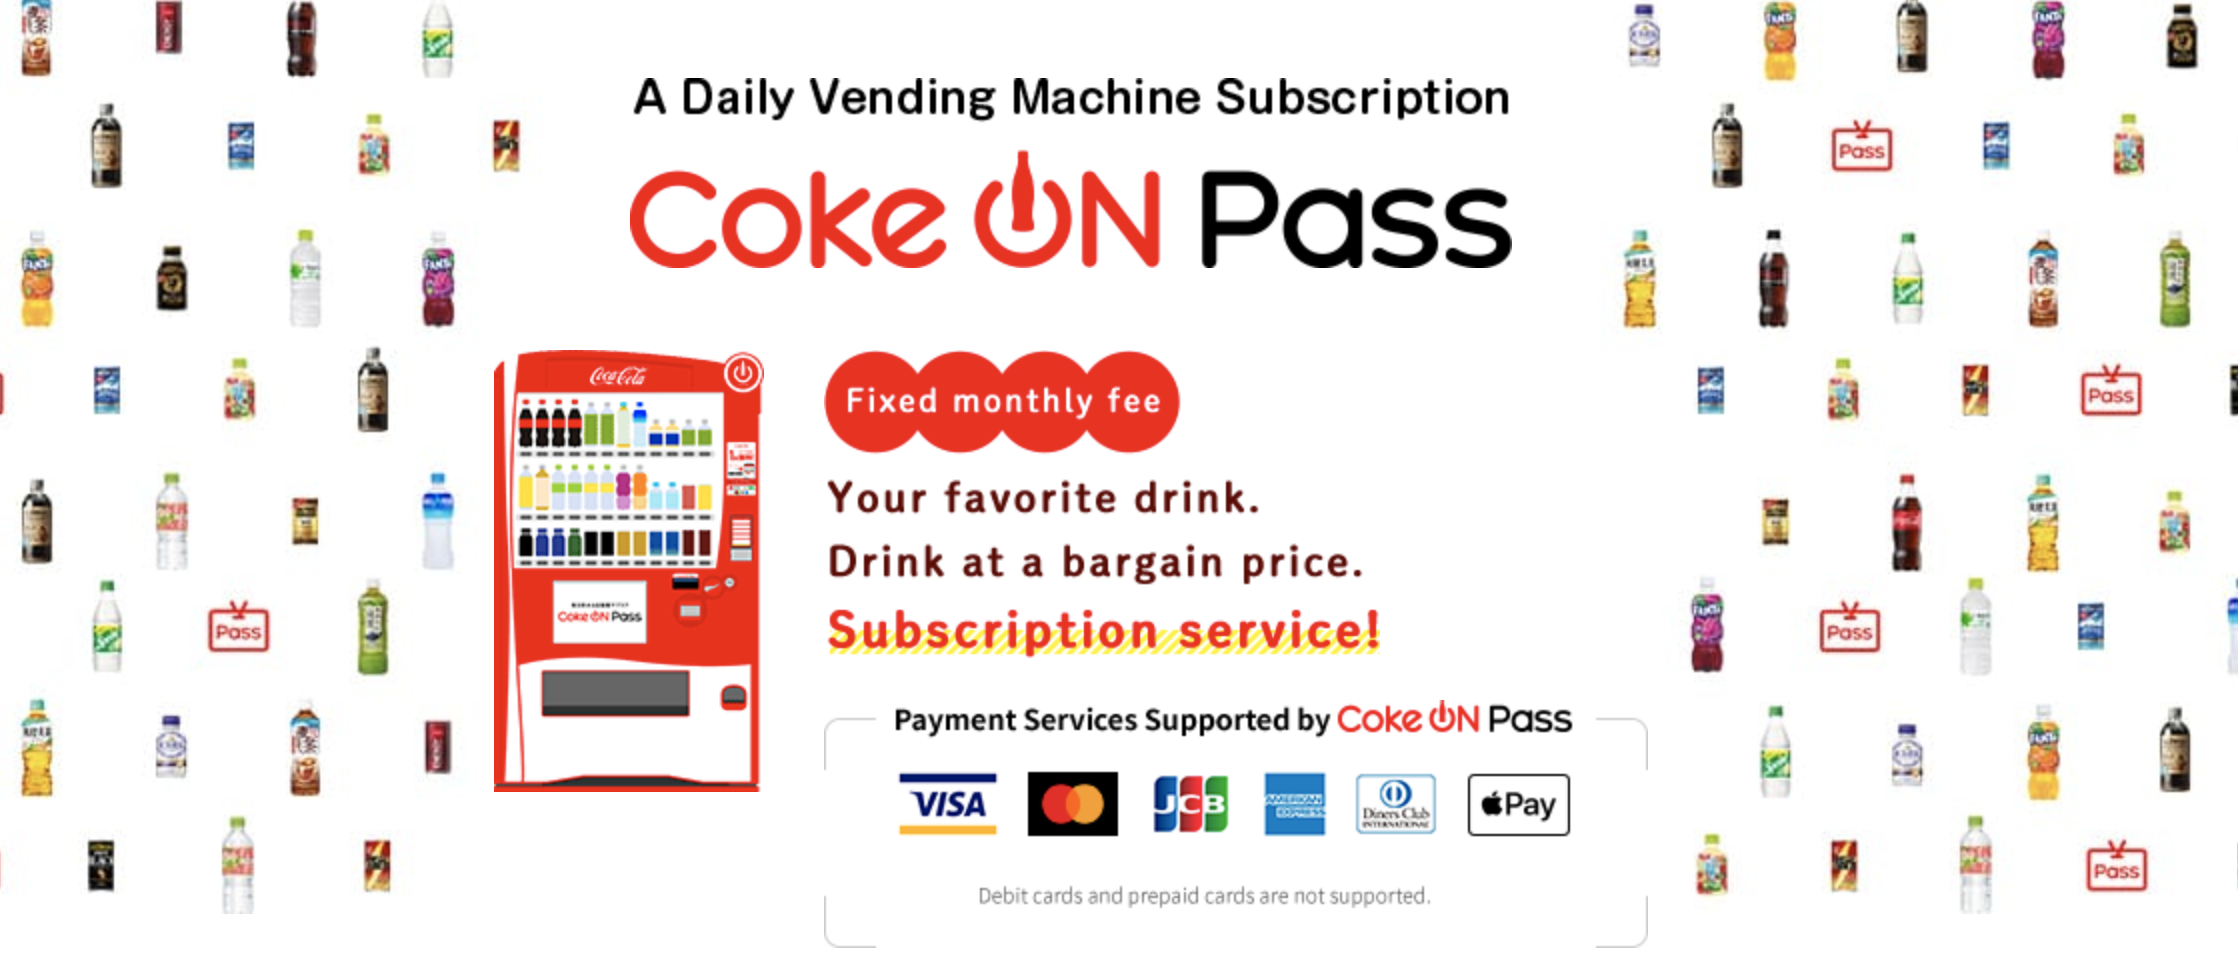 Coke On Pass: Das Abo-Angebot von Coca-Cola.